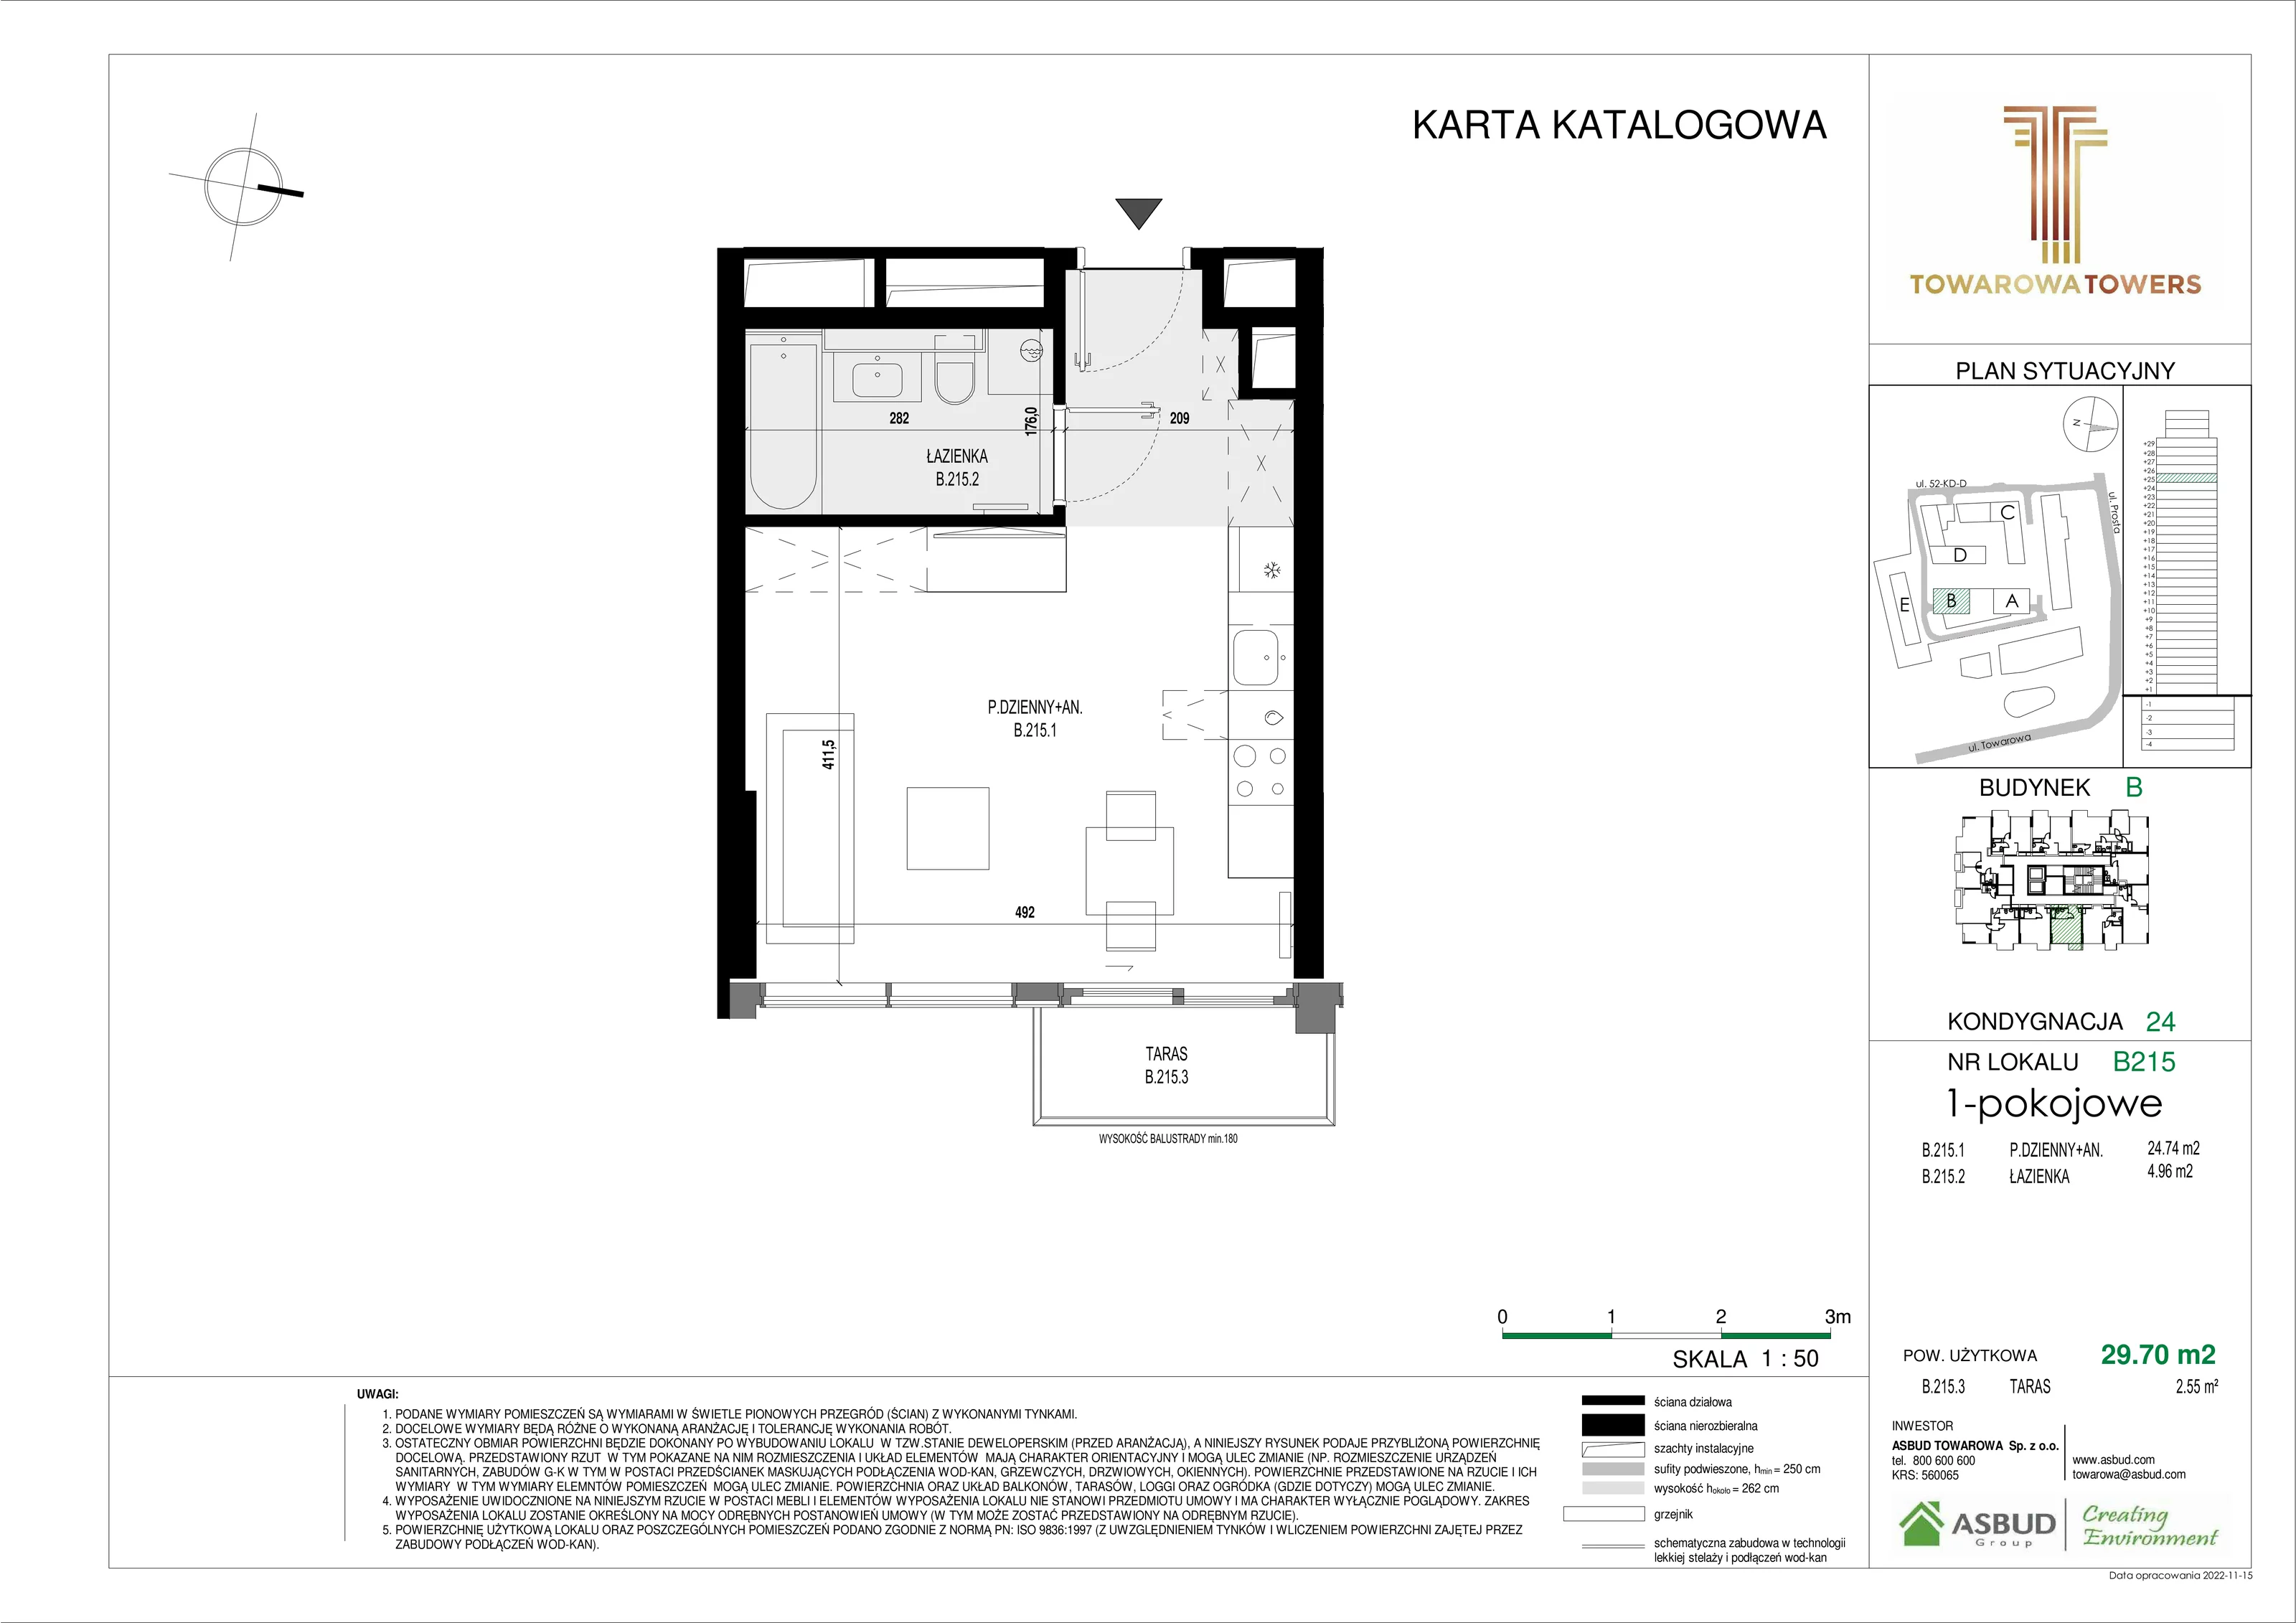 Mieszkanie 29,70 m², piętro 24, oferta nr B.215, Towarowa Towers, Warszawa, Wola, Czyste, ul. Towarowa